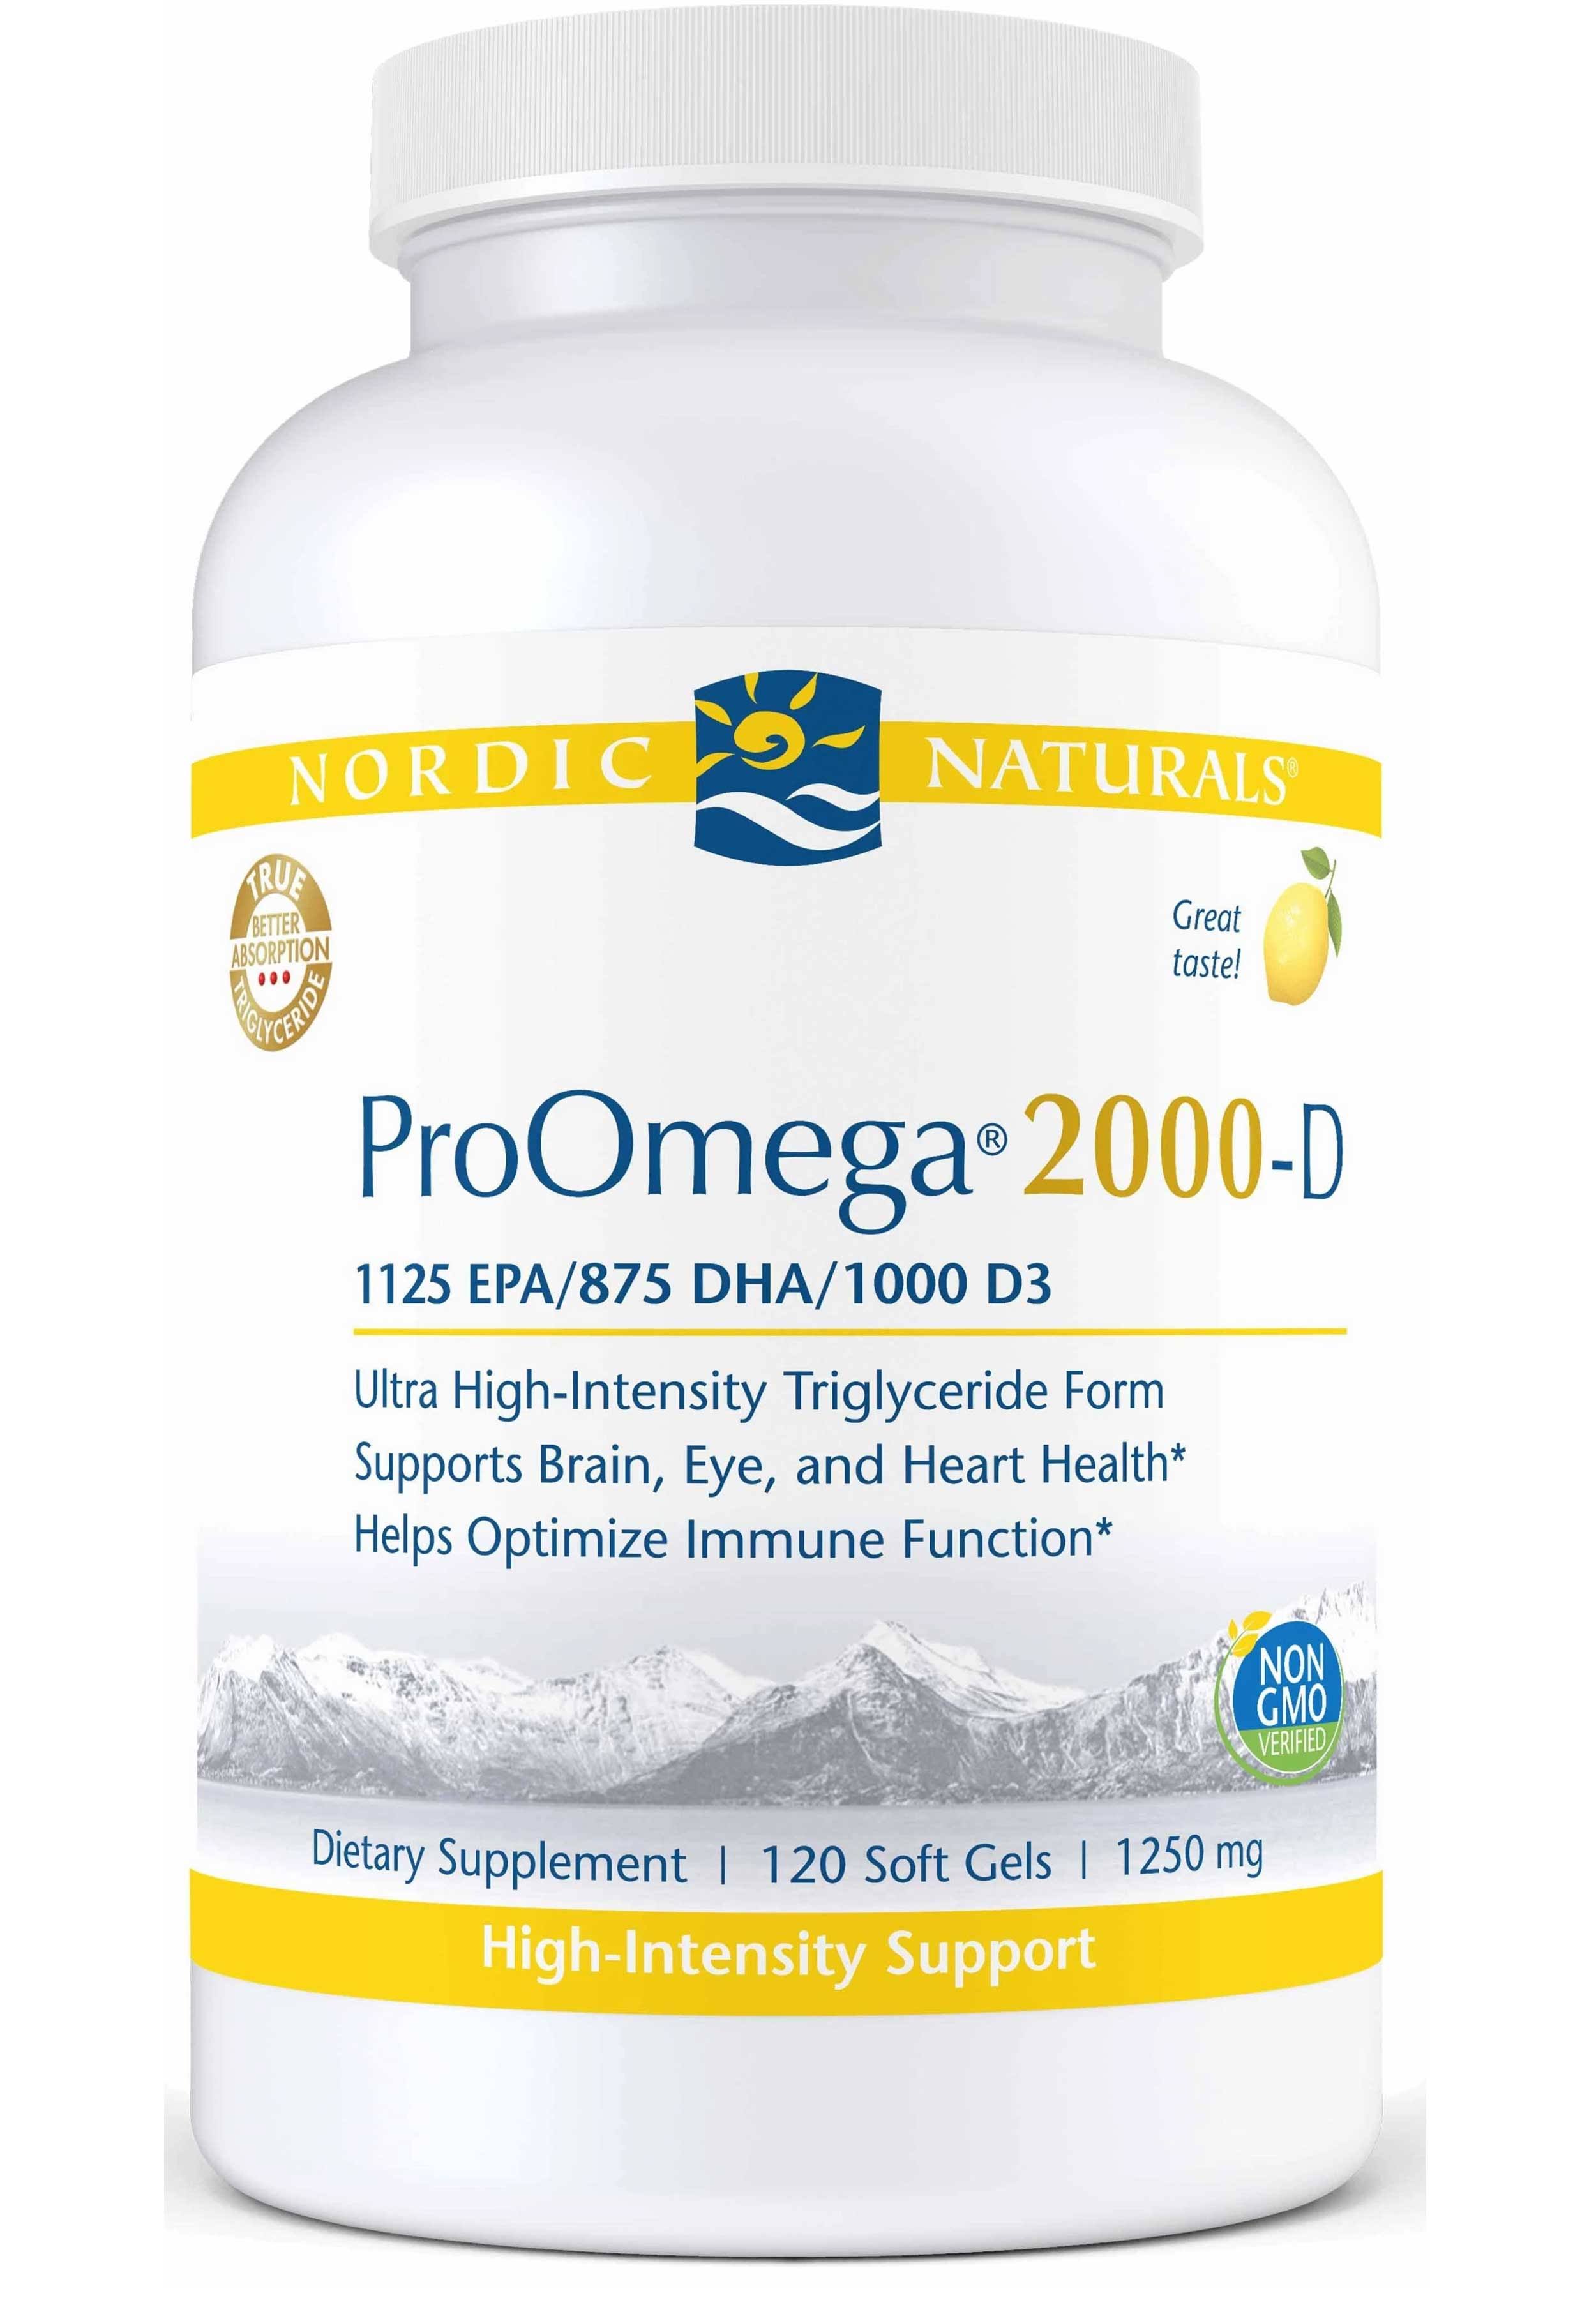 Nordic Naturals ProOmega 2000-D Supplement - 1125 mg, 12 Soft Gels